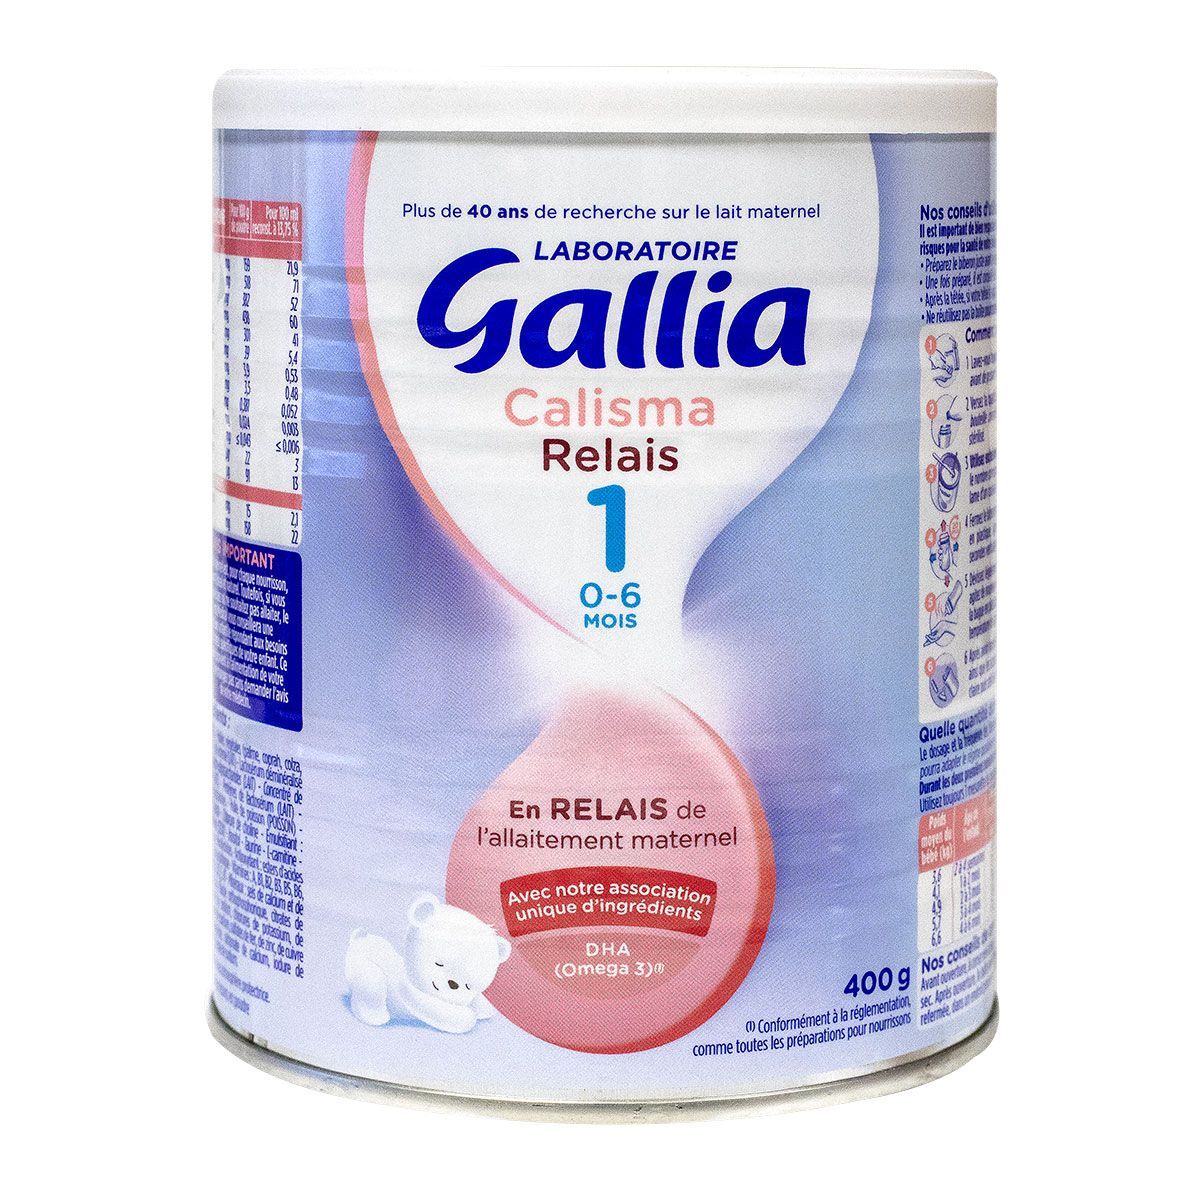 Calisma relais 1er âge 0-6 mois 400g est un lait infantile